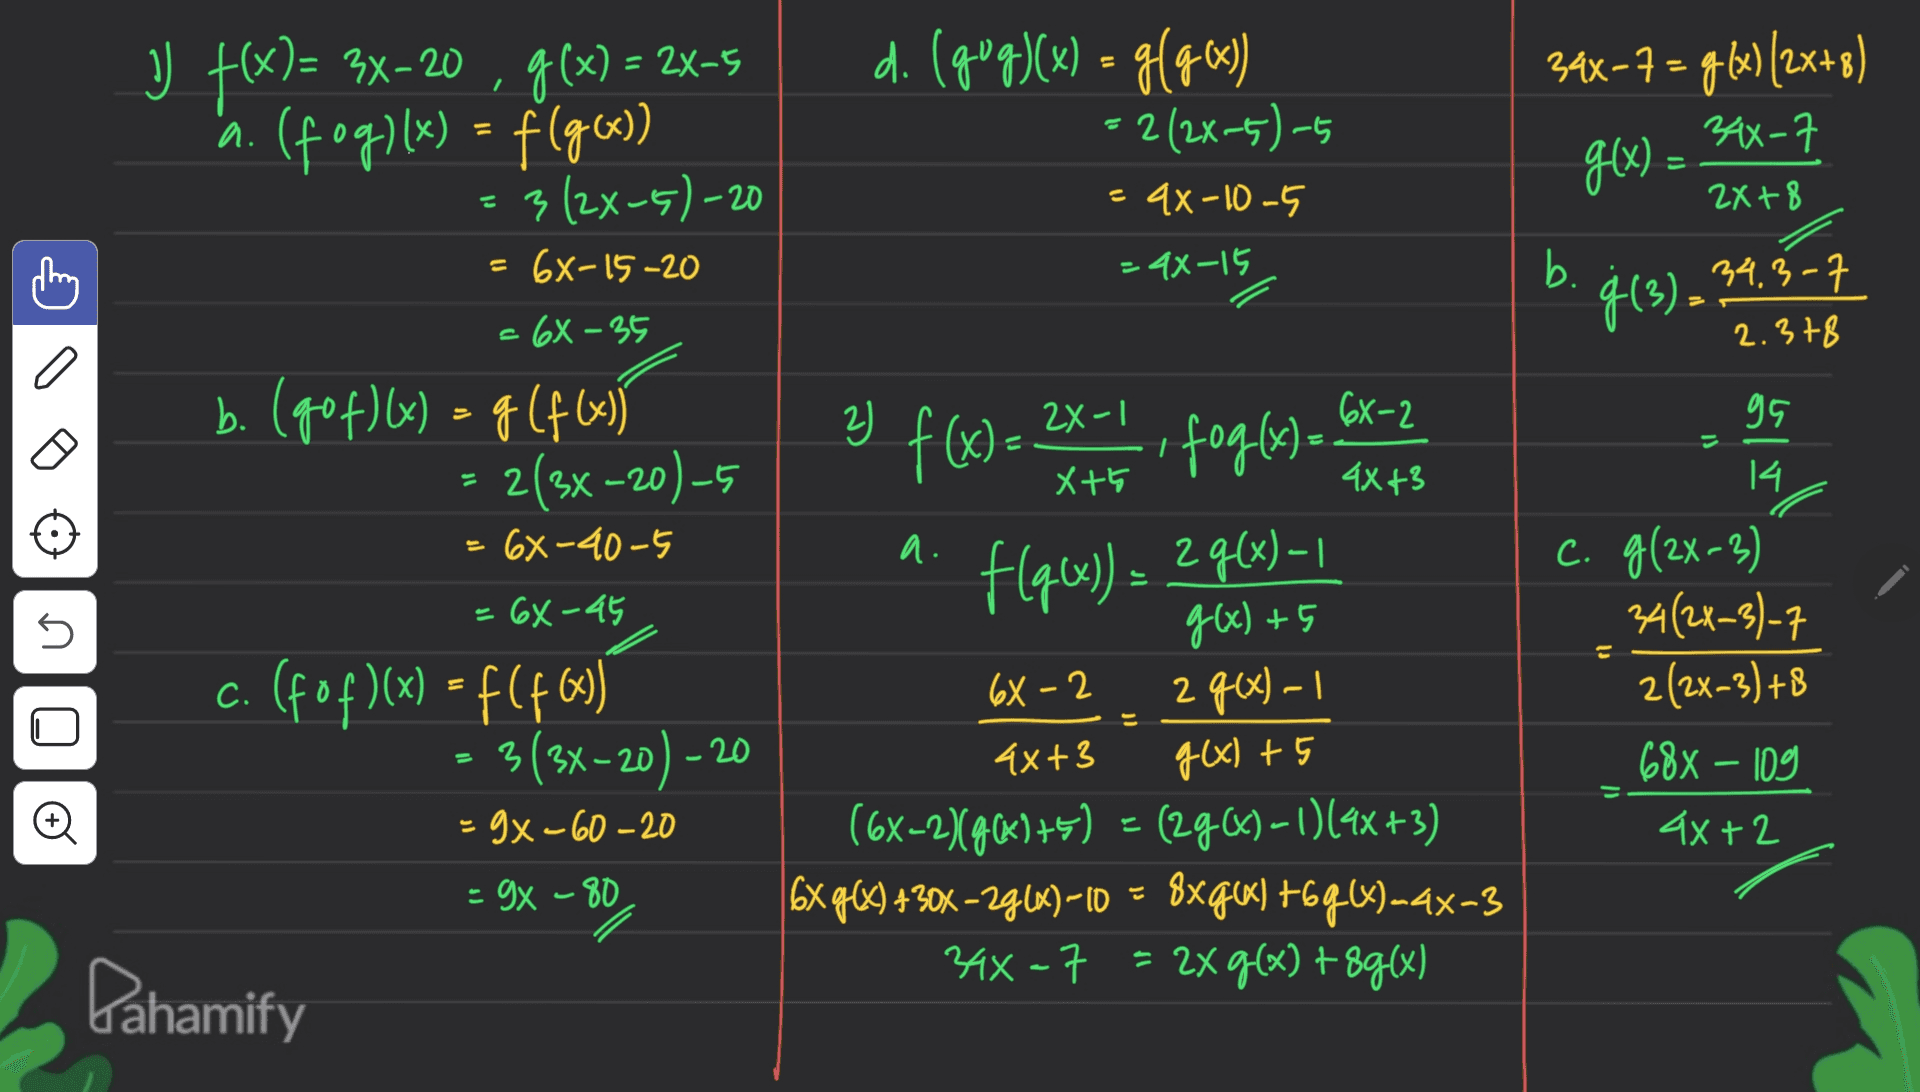 2X- V F(X)= 3x-20 , g(x) = 2x-5 x (fog)(x) = f(g(x)) 3(2x-5)-20 d. (gug)(x) = g(96) 9x : 2(2x-5)-5 34x-7= g(x)/2x+8) 34X-7 g(x) = 4x -10 -5 2x+8 = 6X-15-20 =44-15 b. 34.3-7 ģ(3). 2.378 - 6X - 35 a 2) - 6X-2 b. (gof)(x) = g(f(x)} 2(3x –20) -5 . 95 = 21 X+ 4X43 14 f(x)= 2X1. foglas)- 6x-2 (x)= flqx g(x– 6X-40-5 a. f[q6x)) = 2968)-1 = 6X-45 no 6X-2 c. (fof)(x) = f(463) 3(3x-20) - g(x) +5 2 g(x) - 1 g(x) +5 1 C. g(2x-3) 34(2x-3)-7 2(2x-3) +8 688 - 109 4X+2 -20 Đ = 9x-60 -20 4x+3 (6x-2)(96)+5) = (296) – 1)(4x+3) ) 16x g(x) +30% - 29(%) - 10 = 8xq6) +6q6)-4x-3 34x=7 = 2xg(x) +8g(x) - 9x – 80 Pahamify 